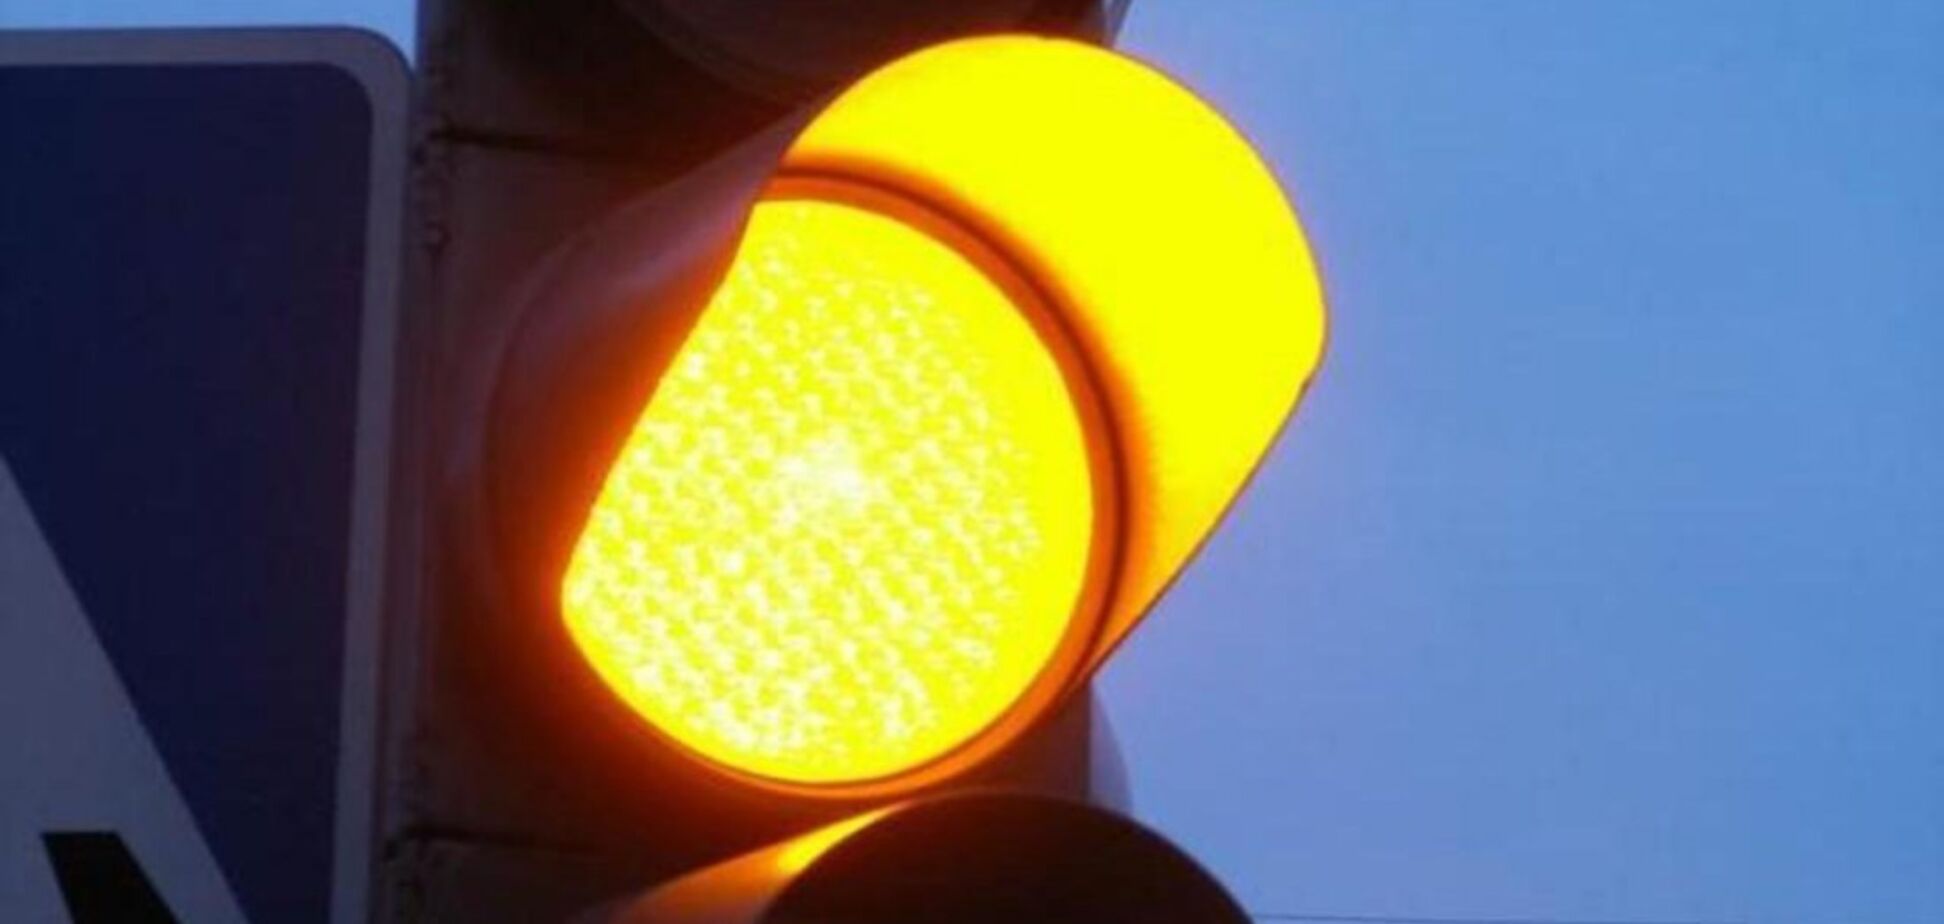 Отмена желтого сигнала светофора: что думают украинцы